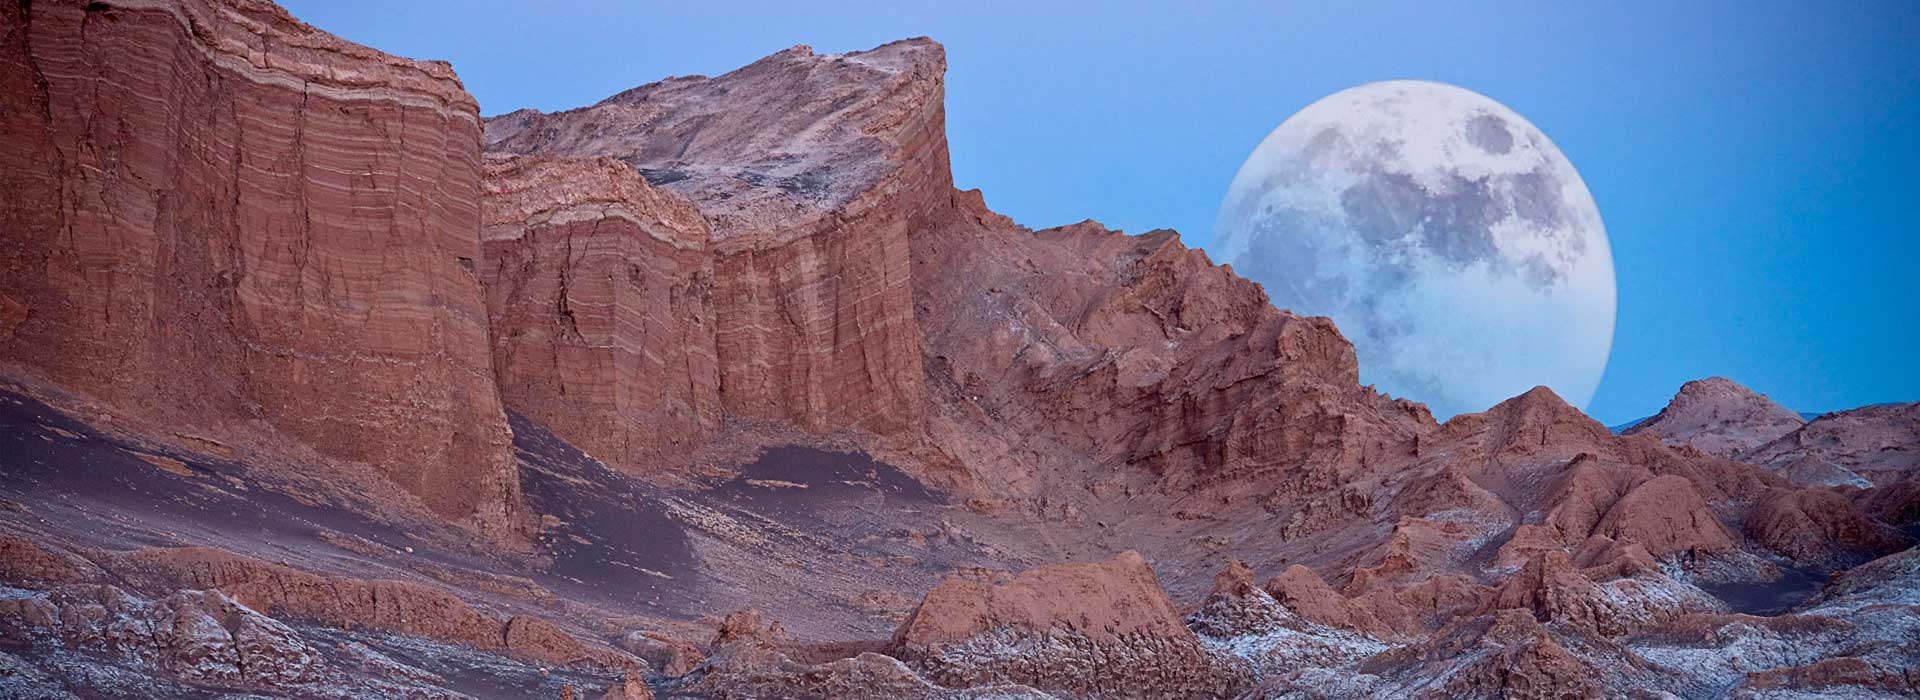 Atacama Desert Landscape